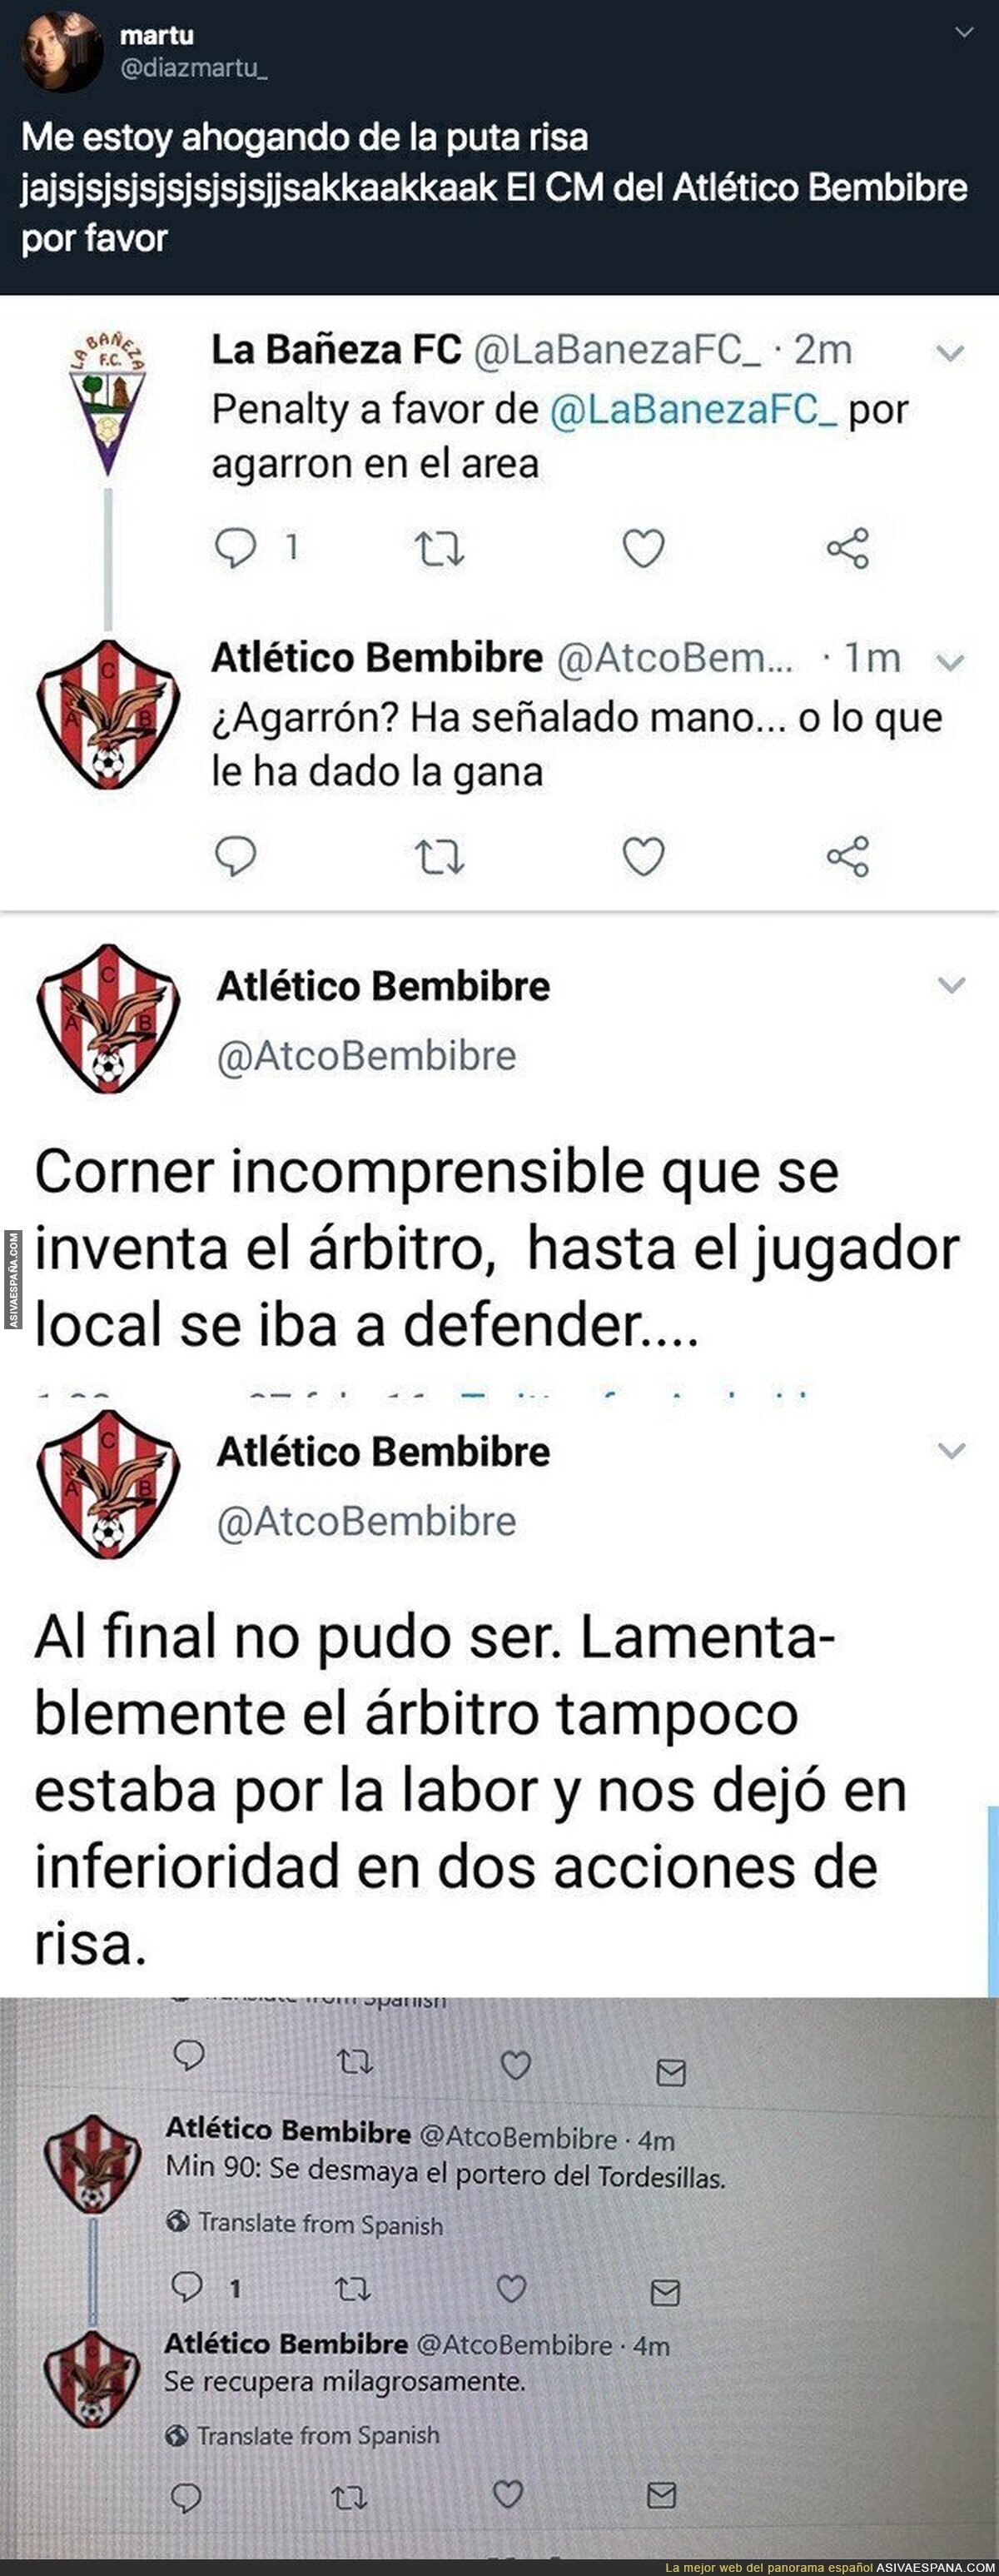 Todo el mundo se está partiendo de risa con los tuits que publica el CM del Atlético Bembibre durante los partidos